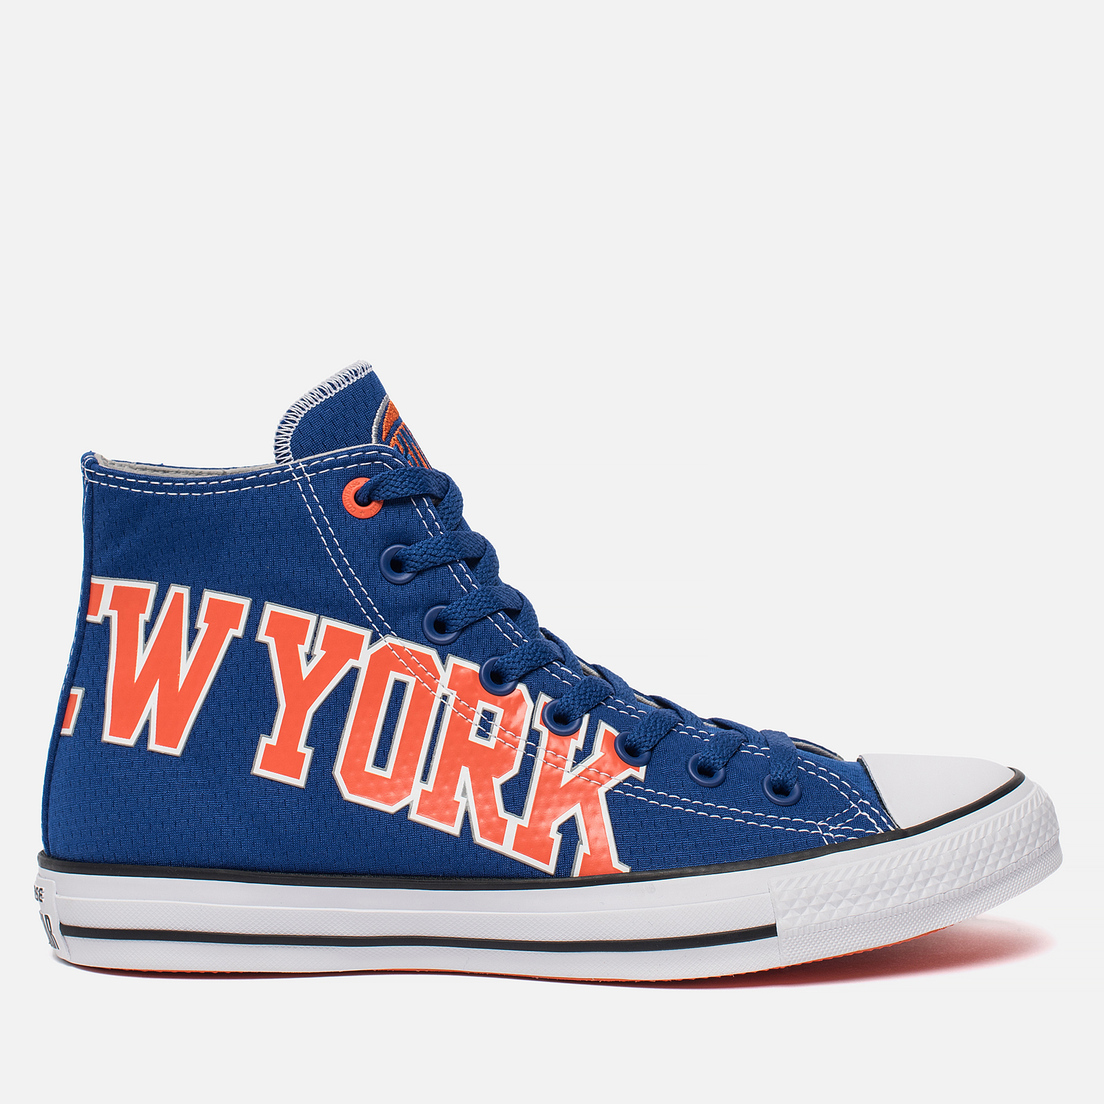 aflevere Stationær Eksempel New York Knicks Converse Flash Sales, SAVE 46% - mpgc.net